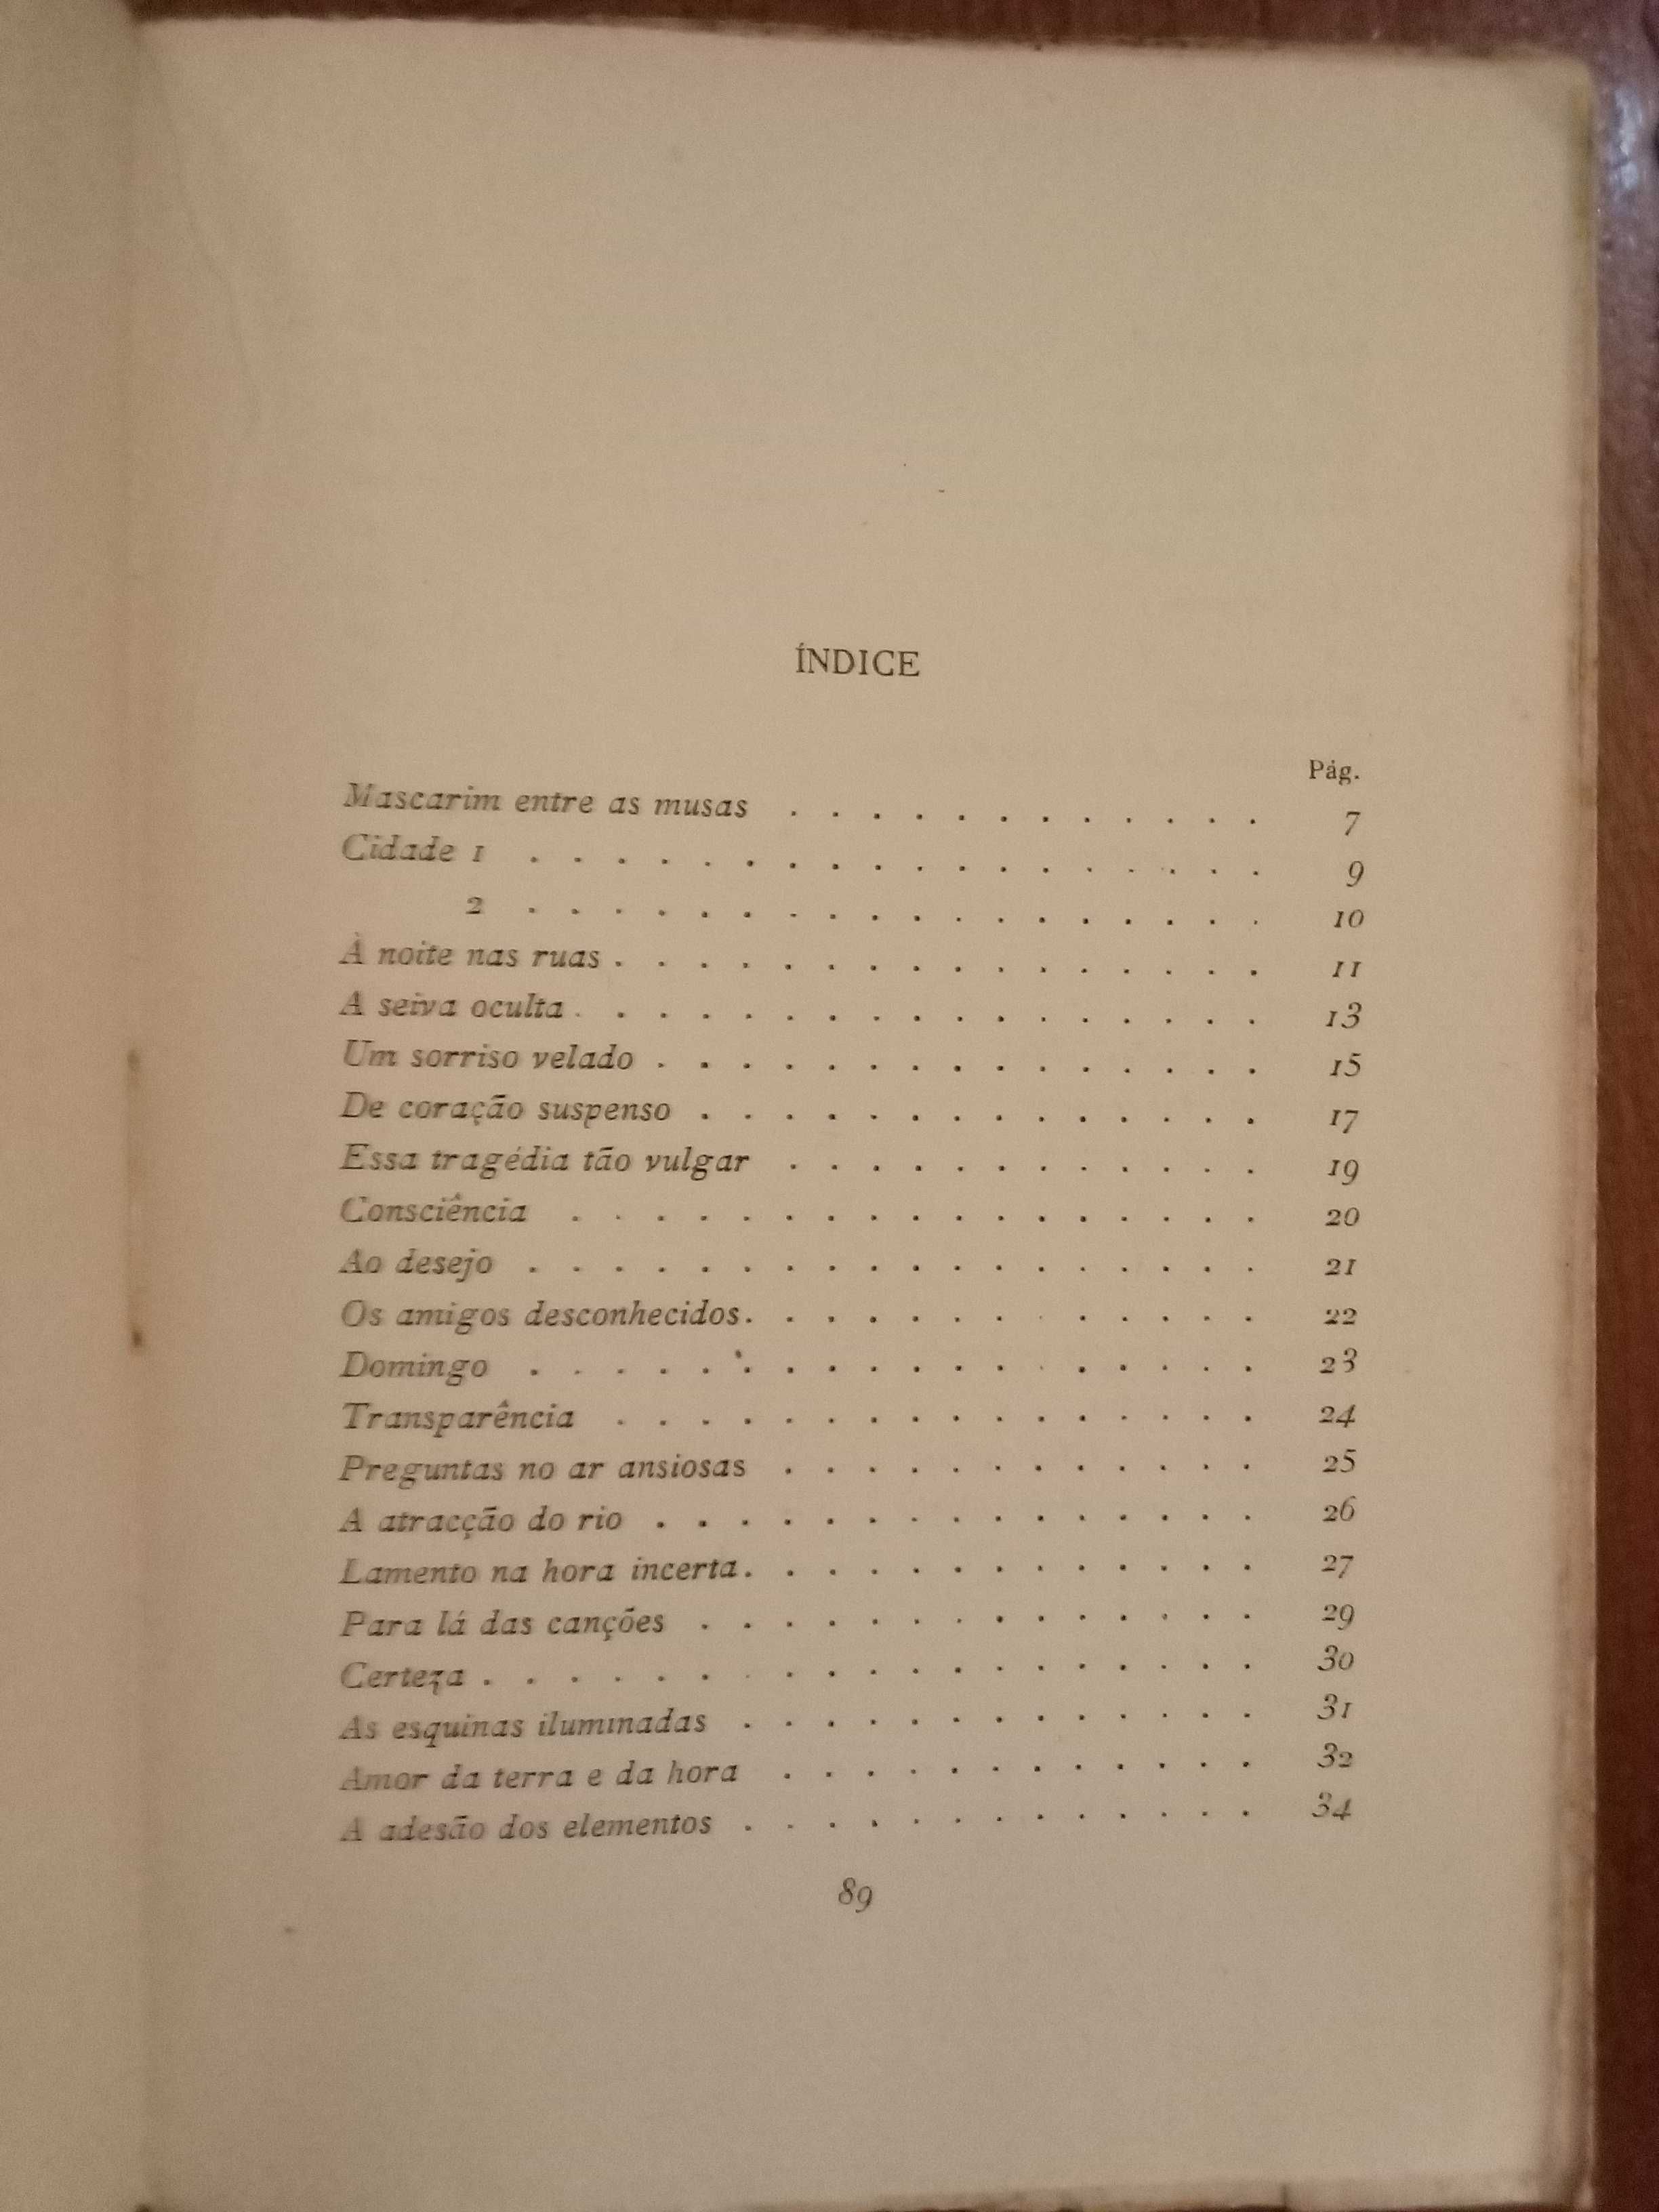 Mário Dionísio - As solicitações e emboscadas [1.ª ed., autografado]